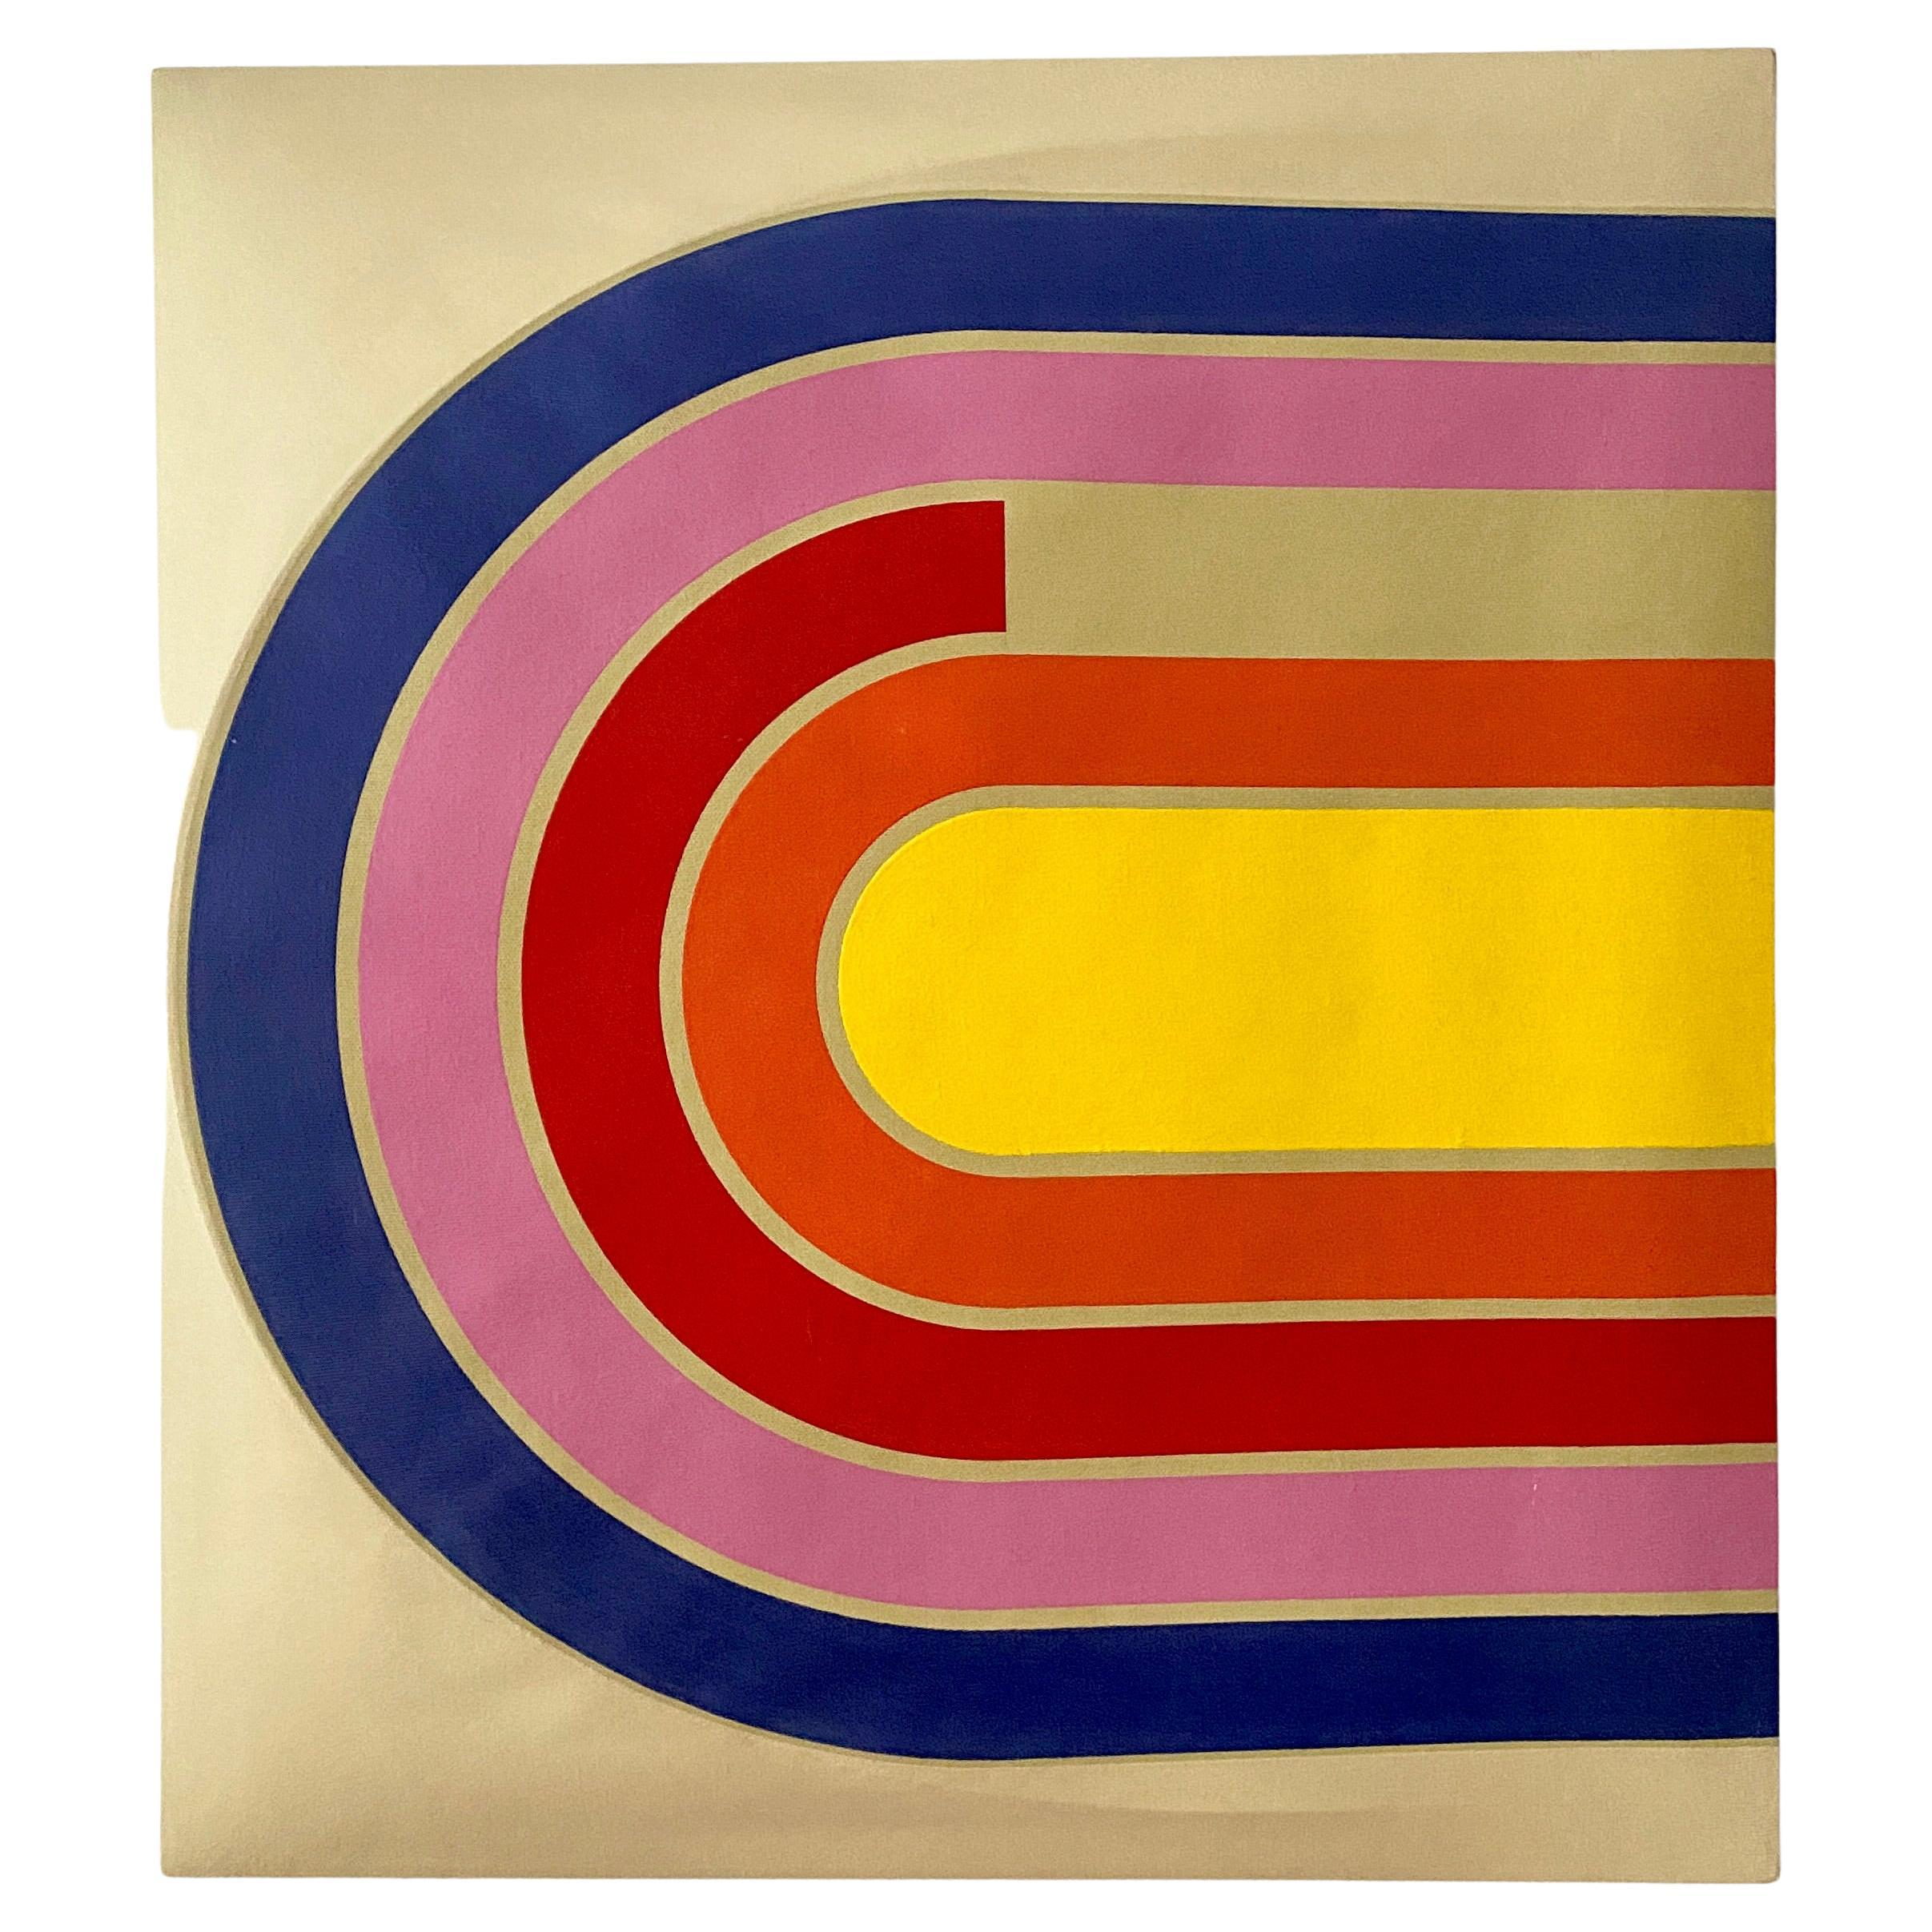 Minimalistisches Pop-Acrylgemälde im Vintage-Stil von Frank Stella, signiert Manuella 70